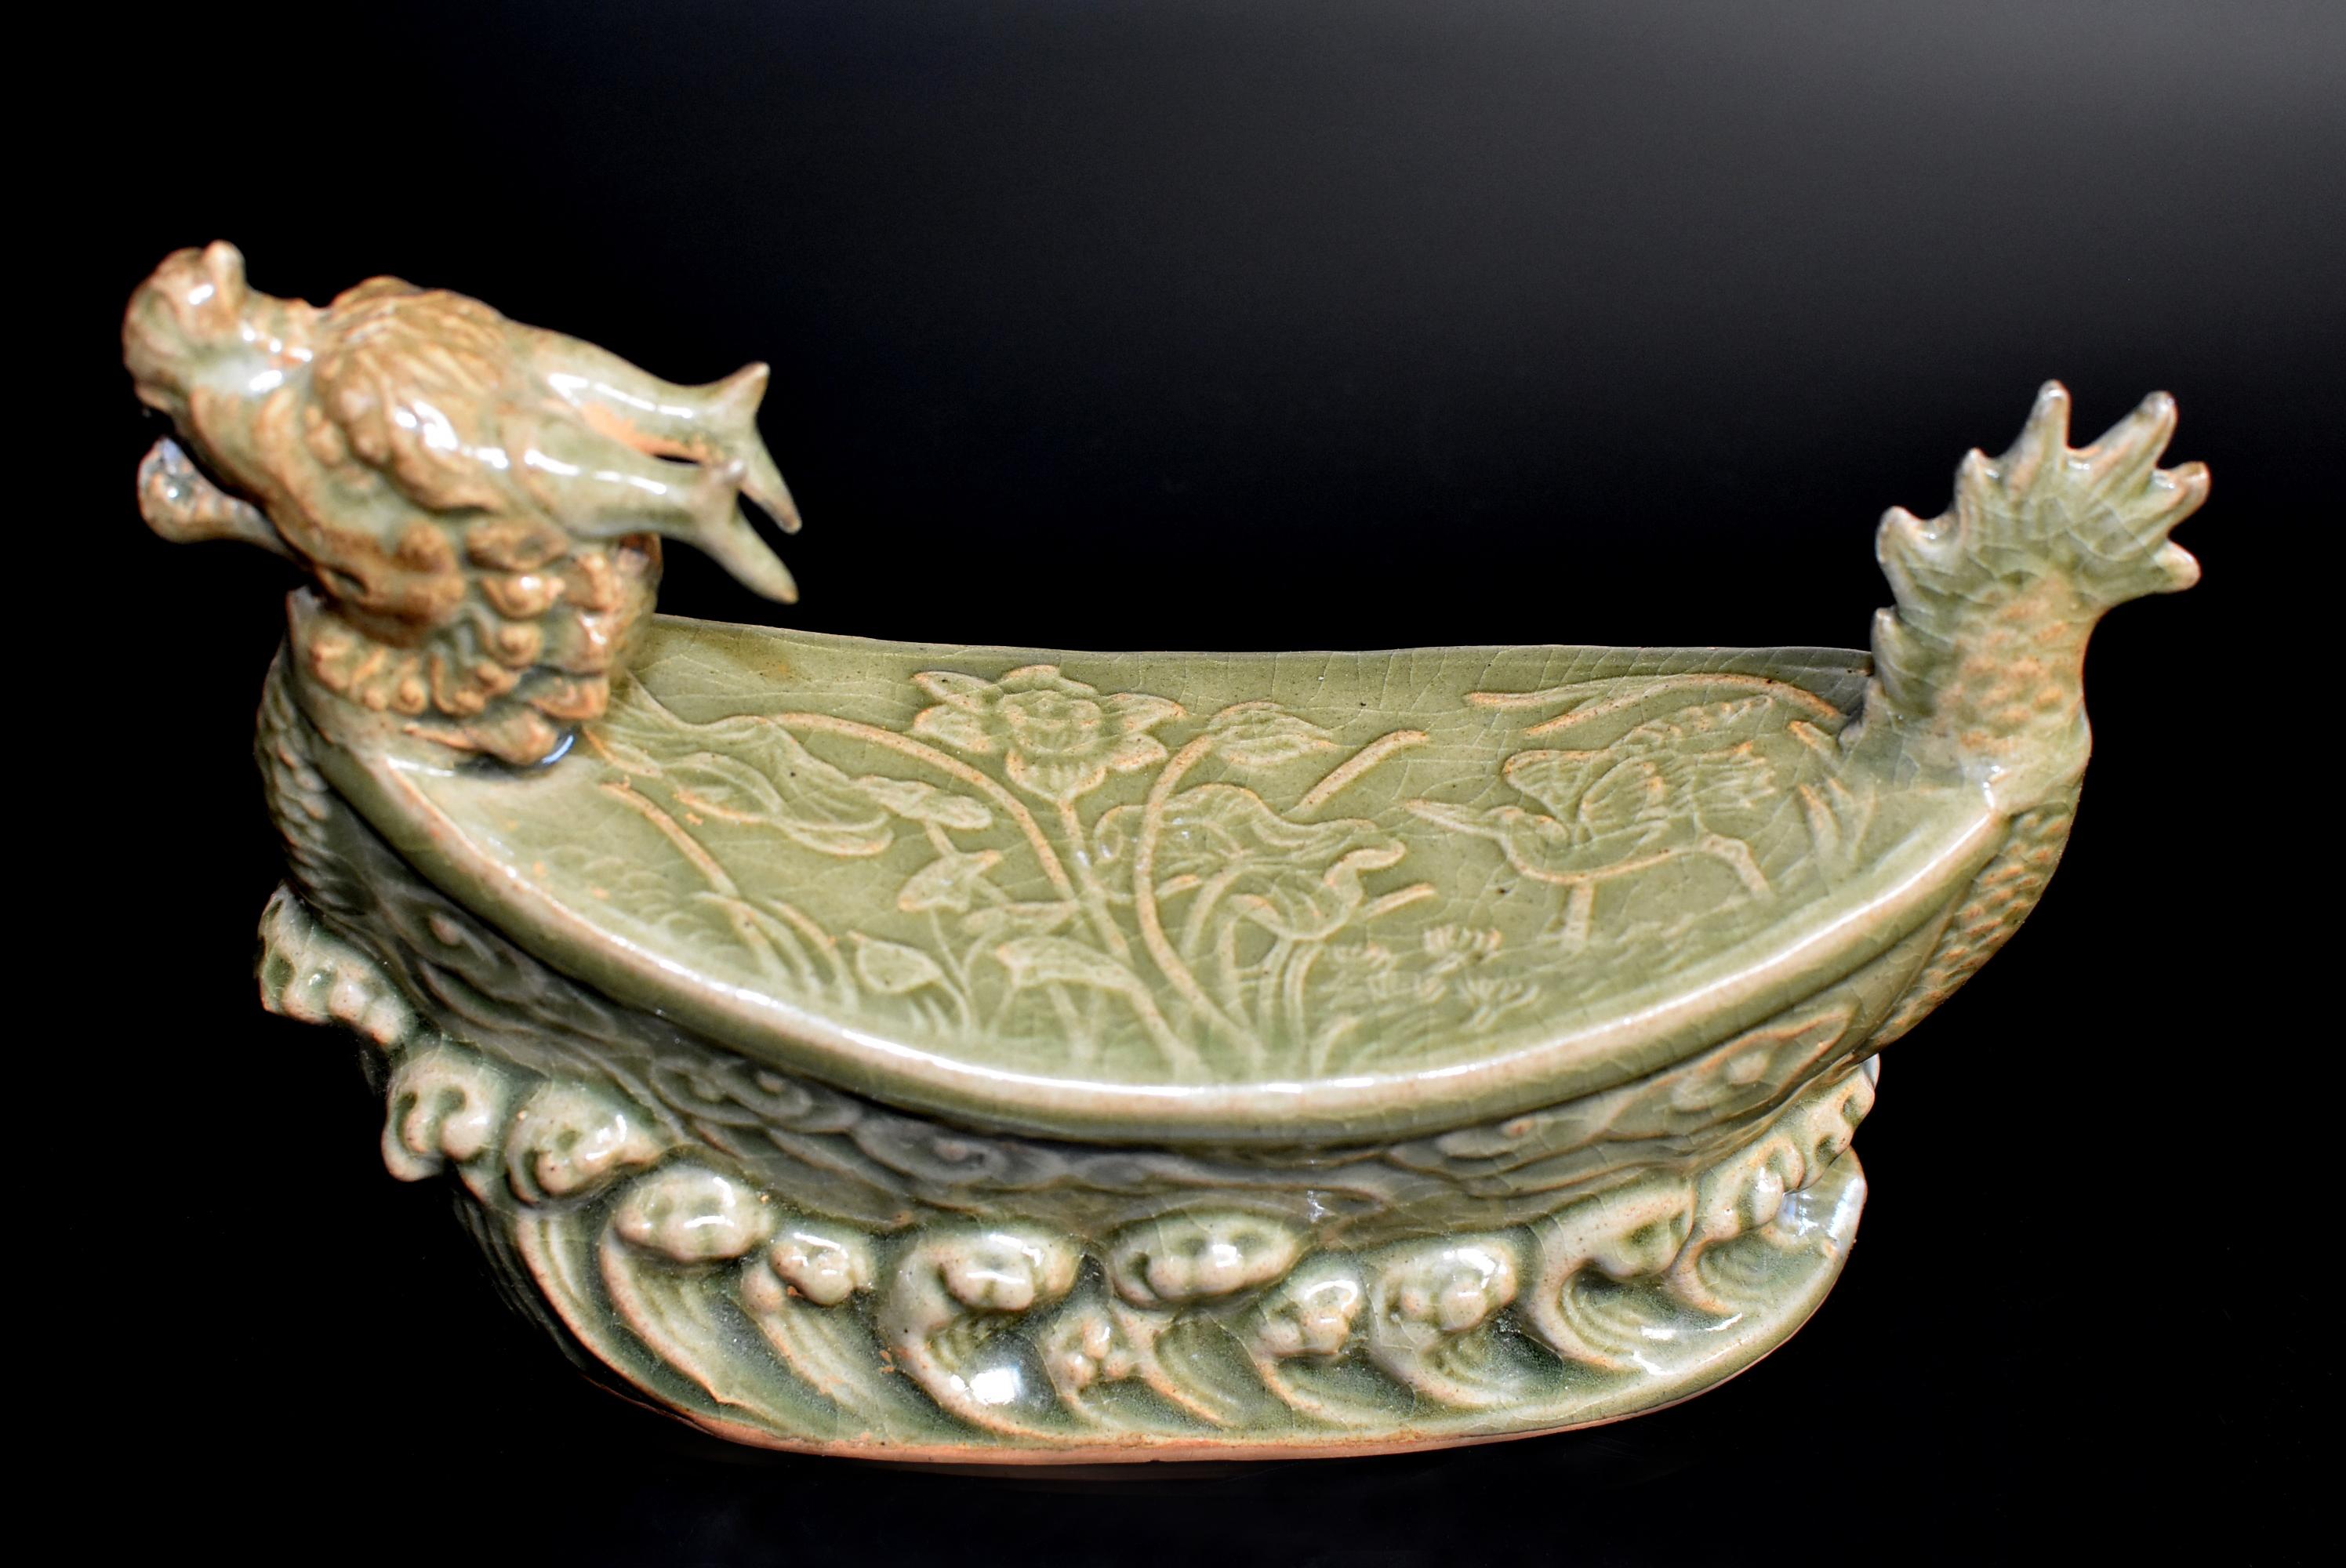 Un oreiller en porcelaine de style dynastie Song du four Long Quan. Le four Long Quan est l'un des plus importants fours de la dynastie Song. Créée il y a 1600 ans, elle produit des pièces émaillées en vert céladon et vert feuille de lotus, avec une